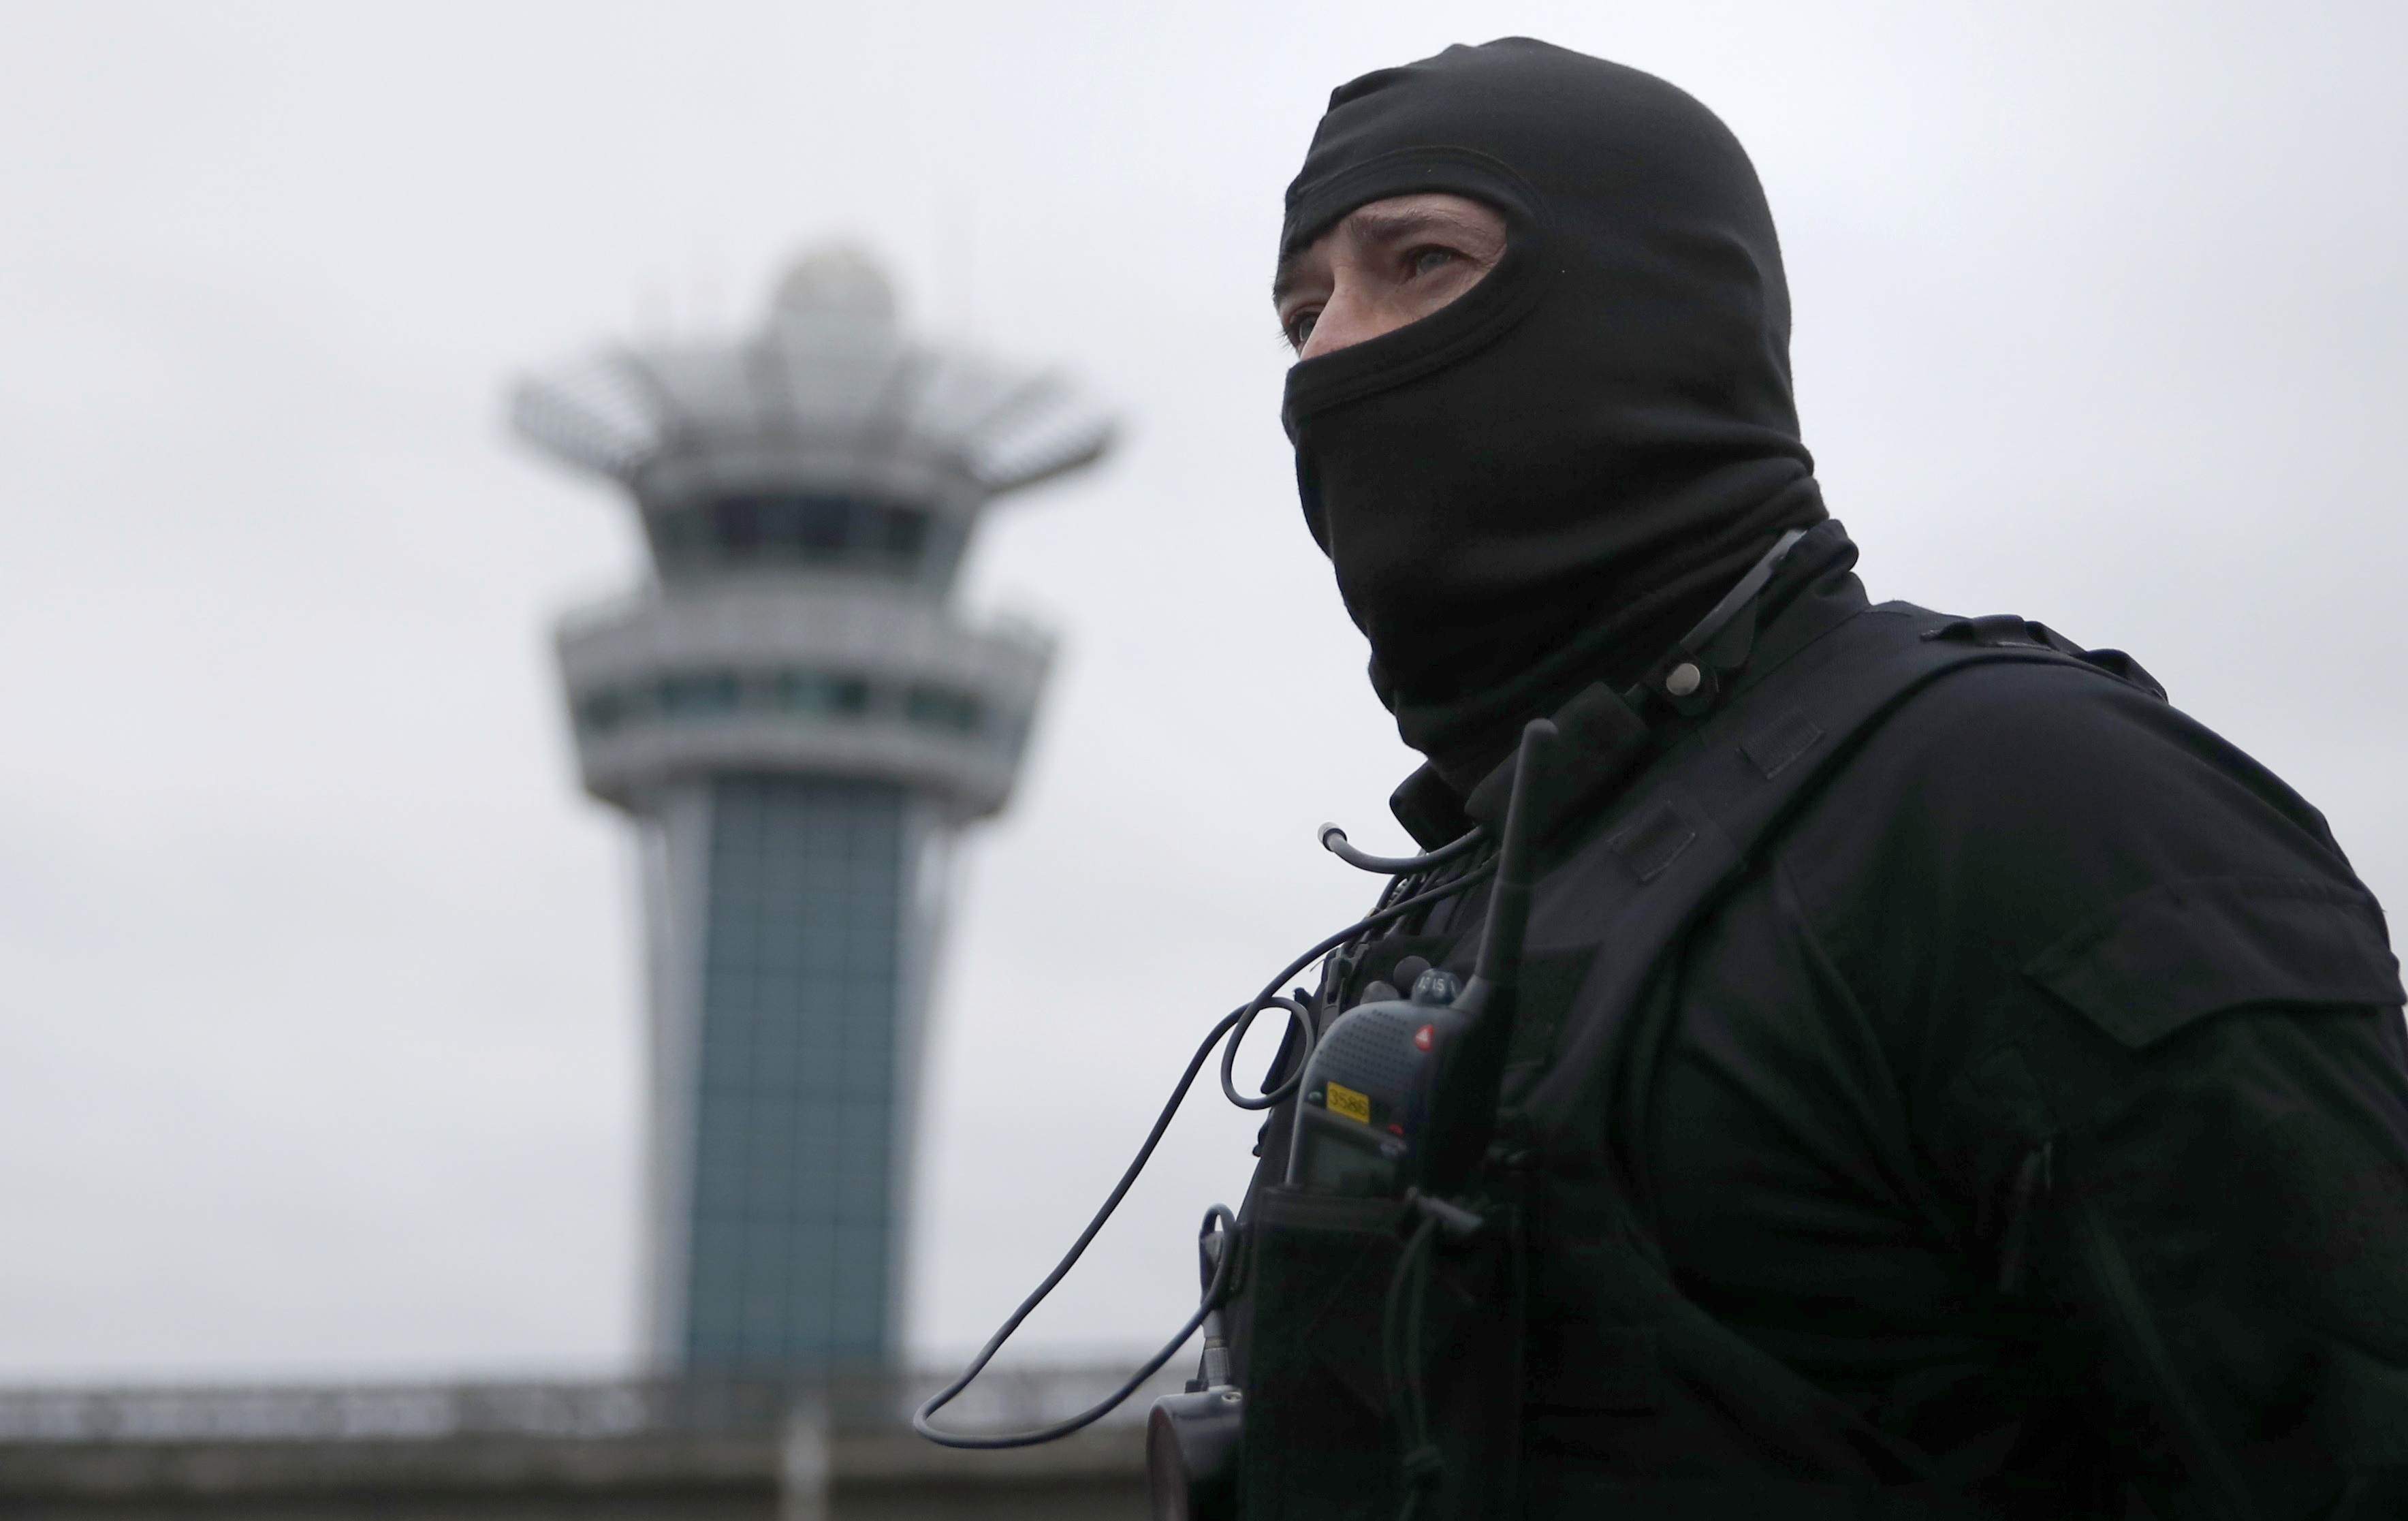 Γαλλία: Συναγερμός στο αεροδρόμιο «Σαρλ ντε Γκωλ» - Περουβιανή έμπορος ναρκωτικών πυροβόλησε τελωνειακή υπάλληλο